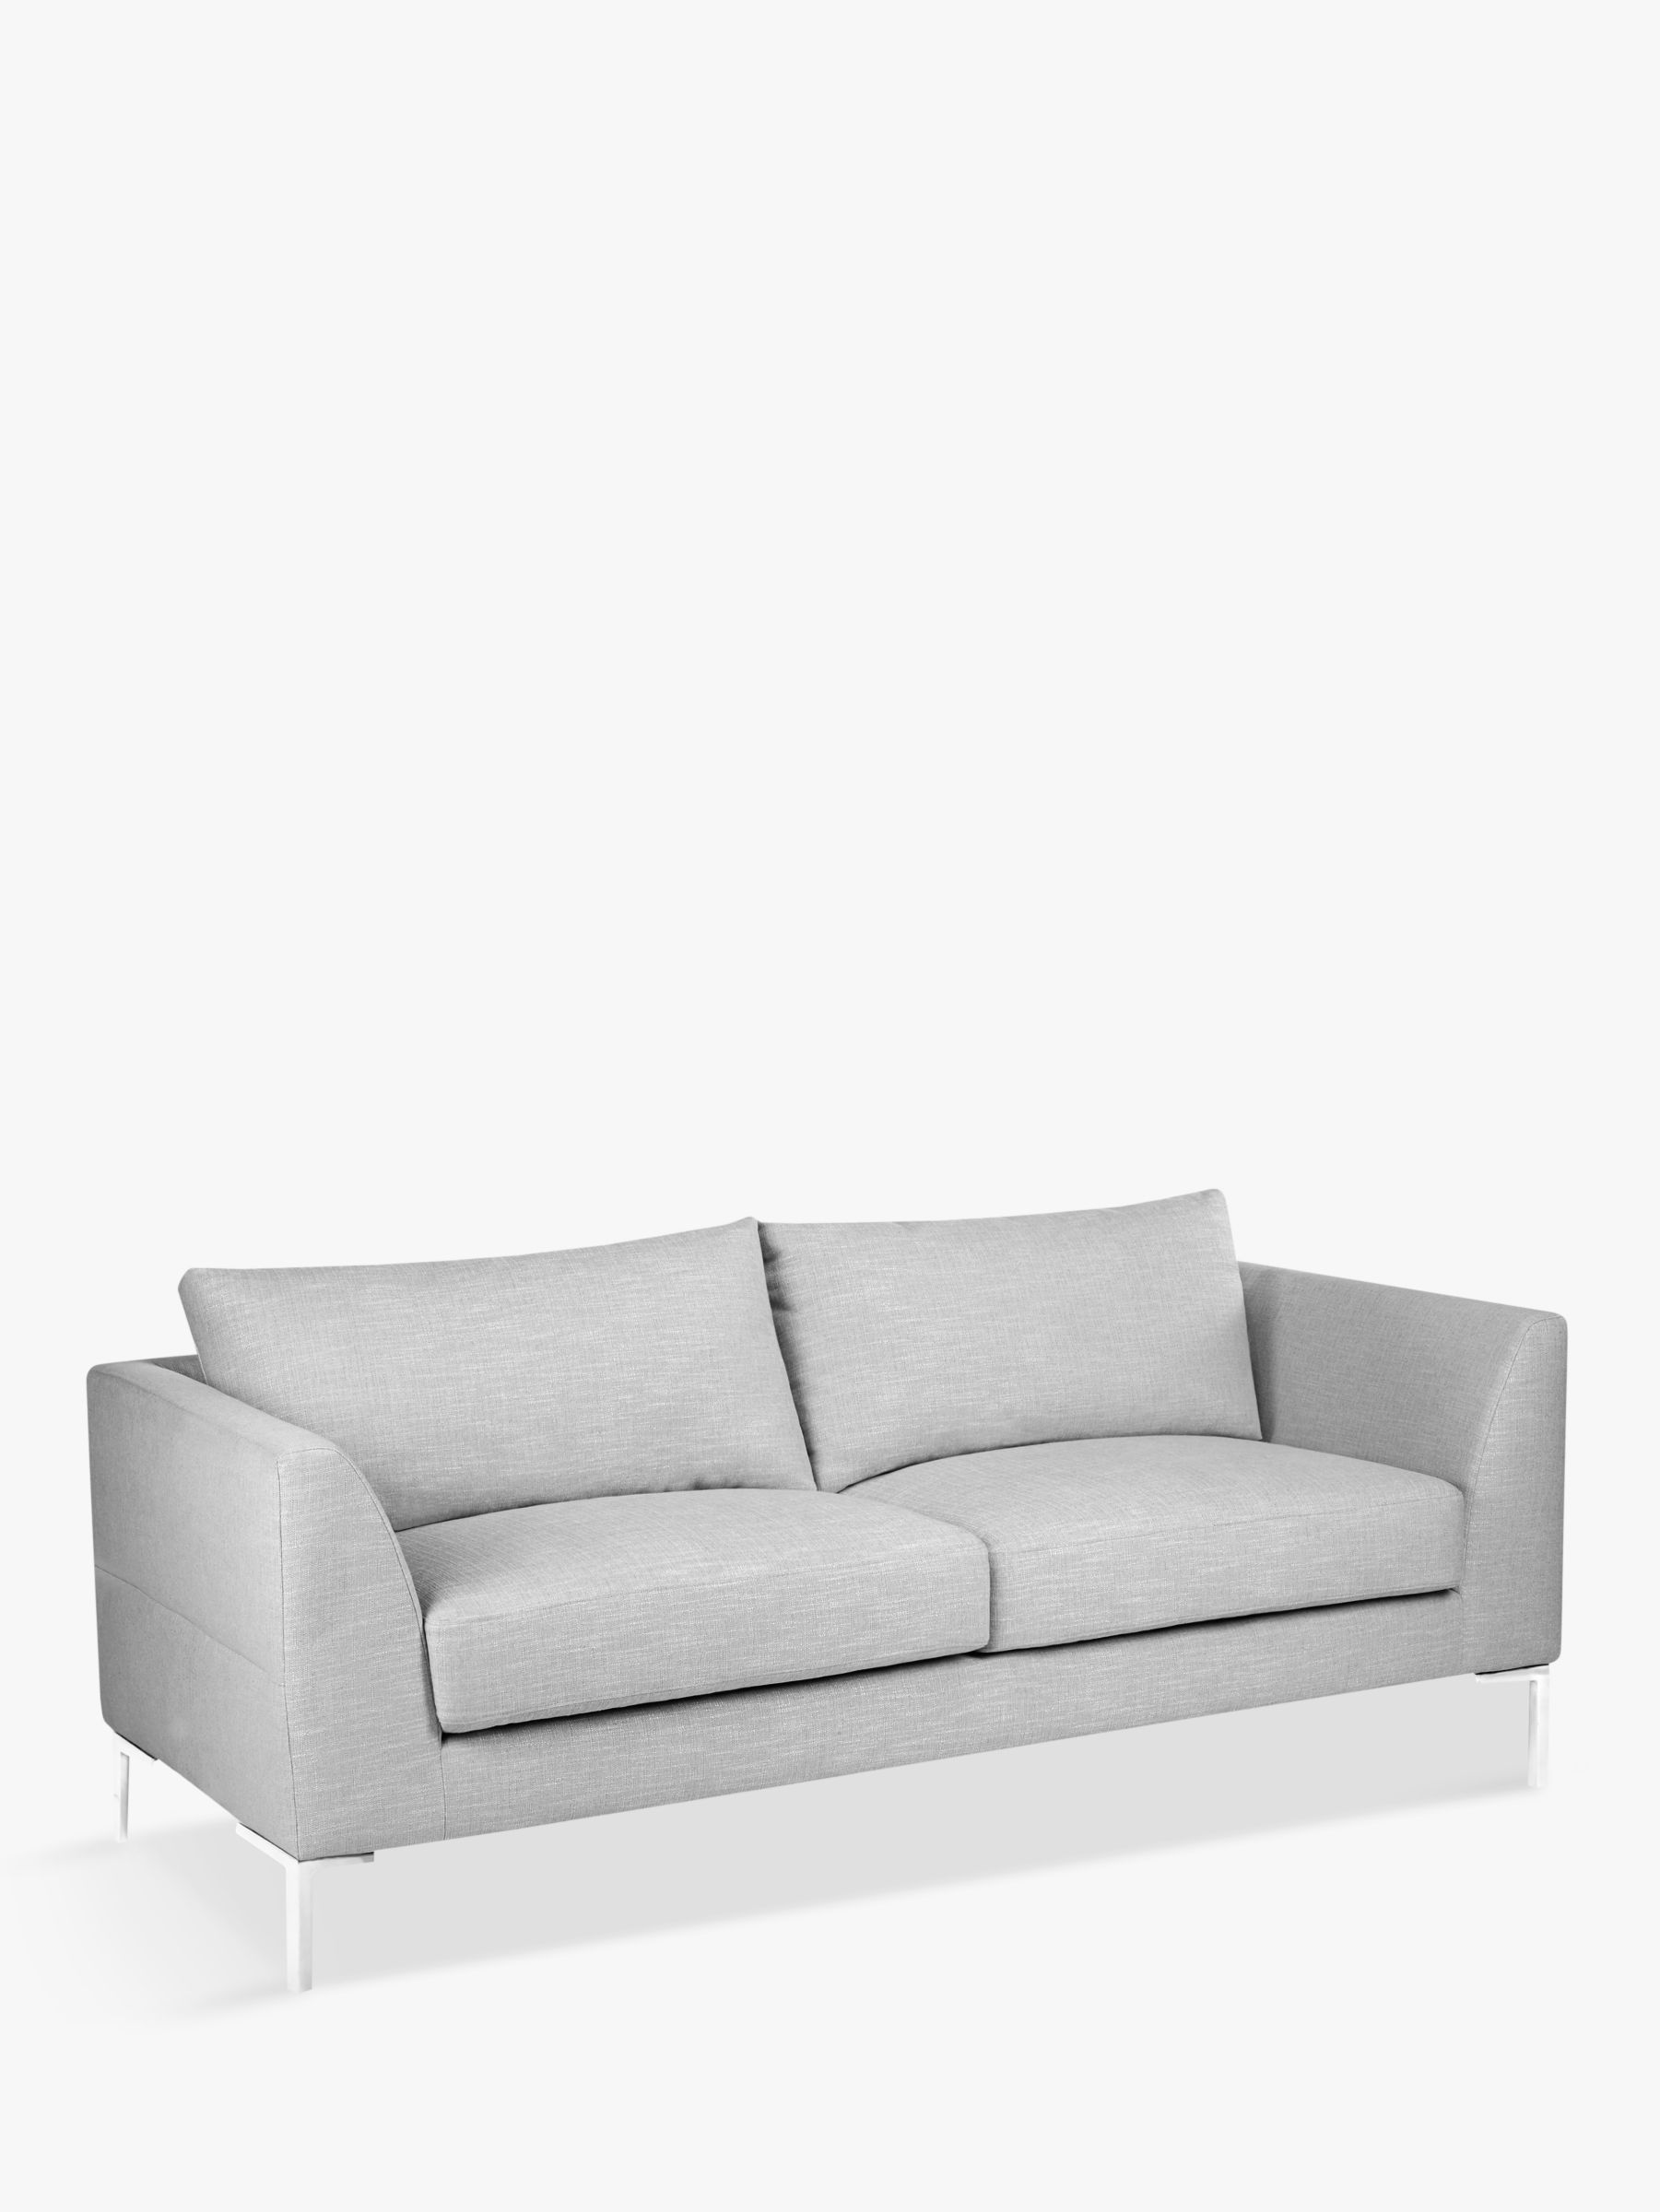 John Lewis Belgrave Large 3 Seater Sofa, Metal Leg